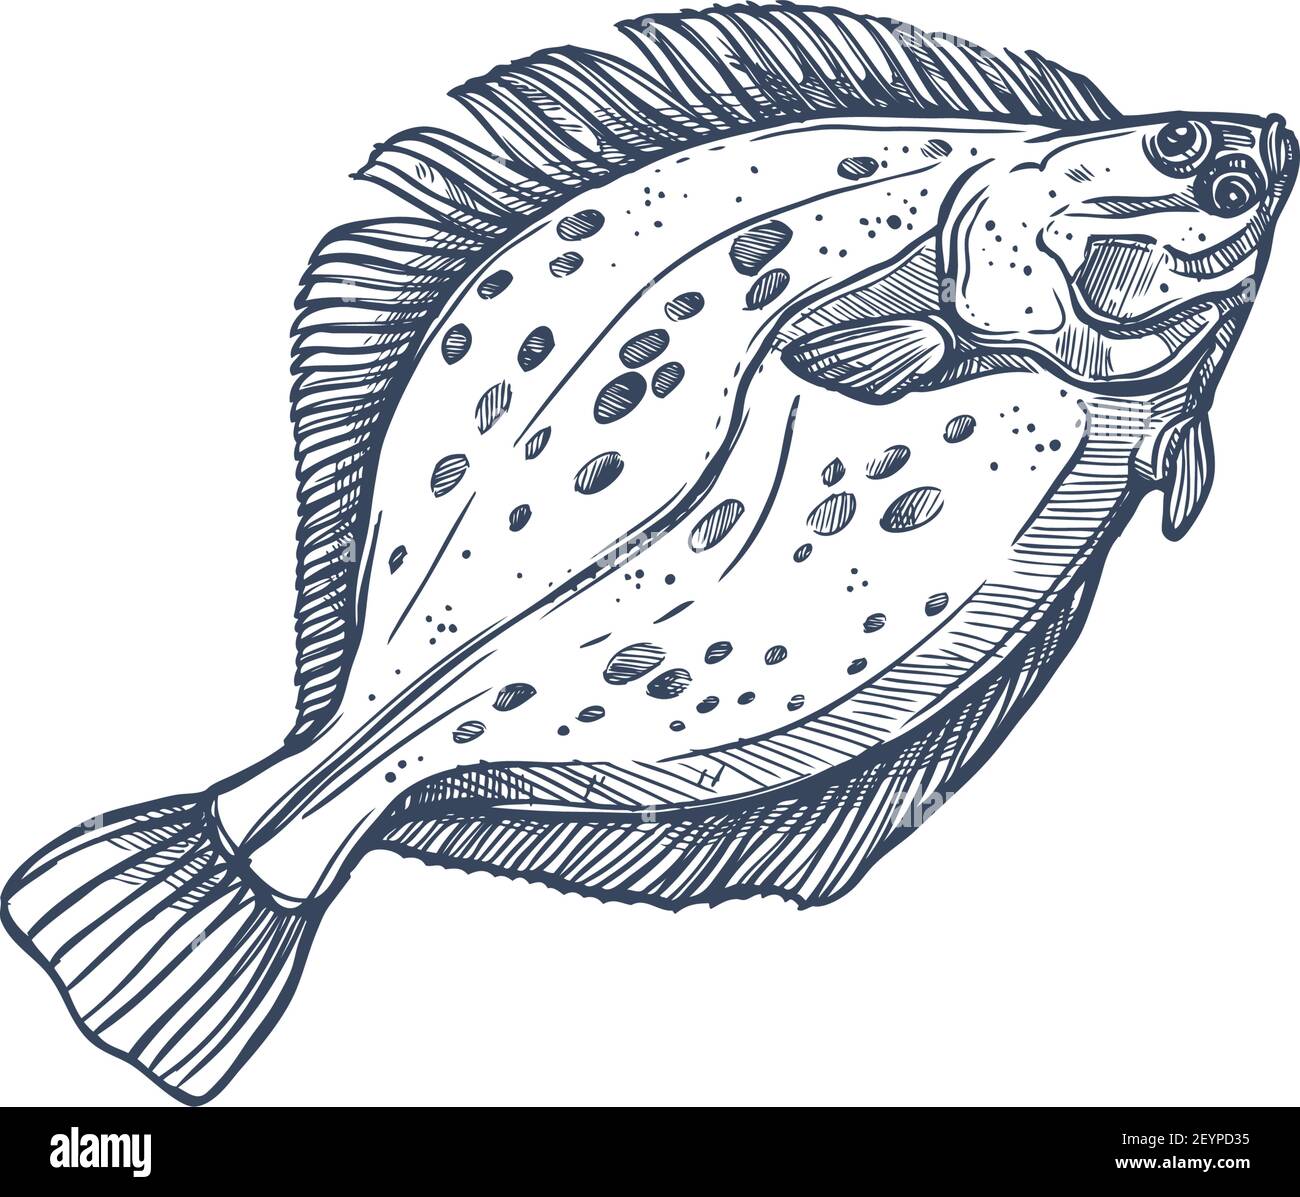 Flounder specie di pesci piatti isolato schizzo monocromatico. Pesci demersali vettoriali che vivono in fondo agli oceani. Golfo o passera estiva meridionale, pinta europea Illustrazione Vettoriale